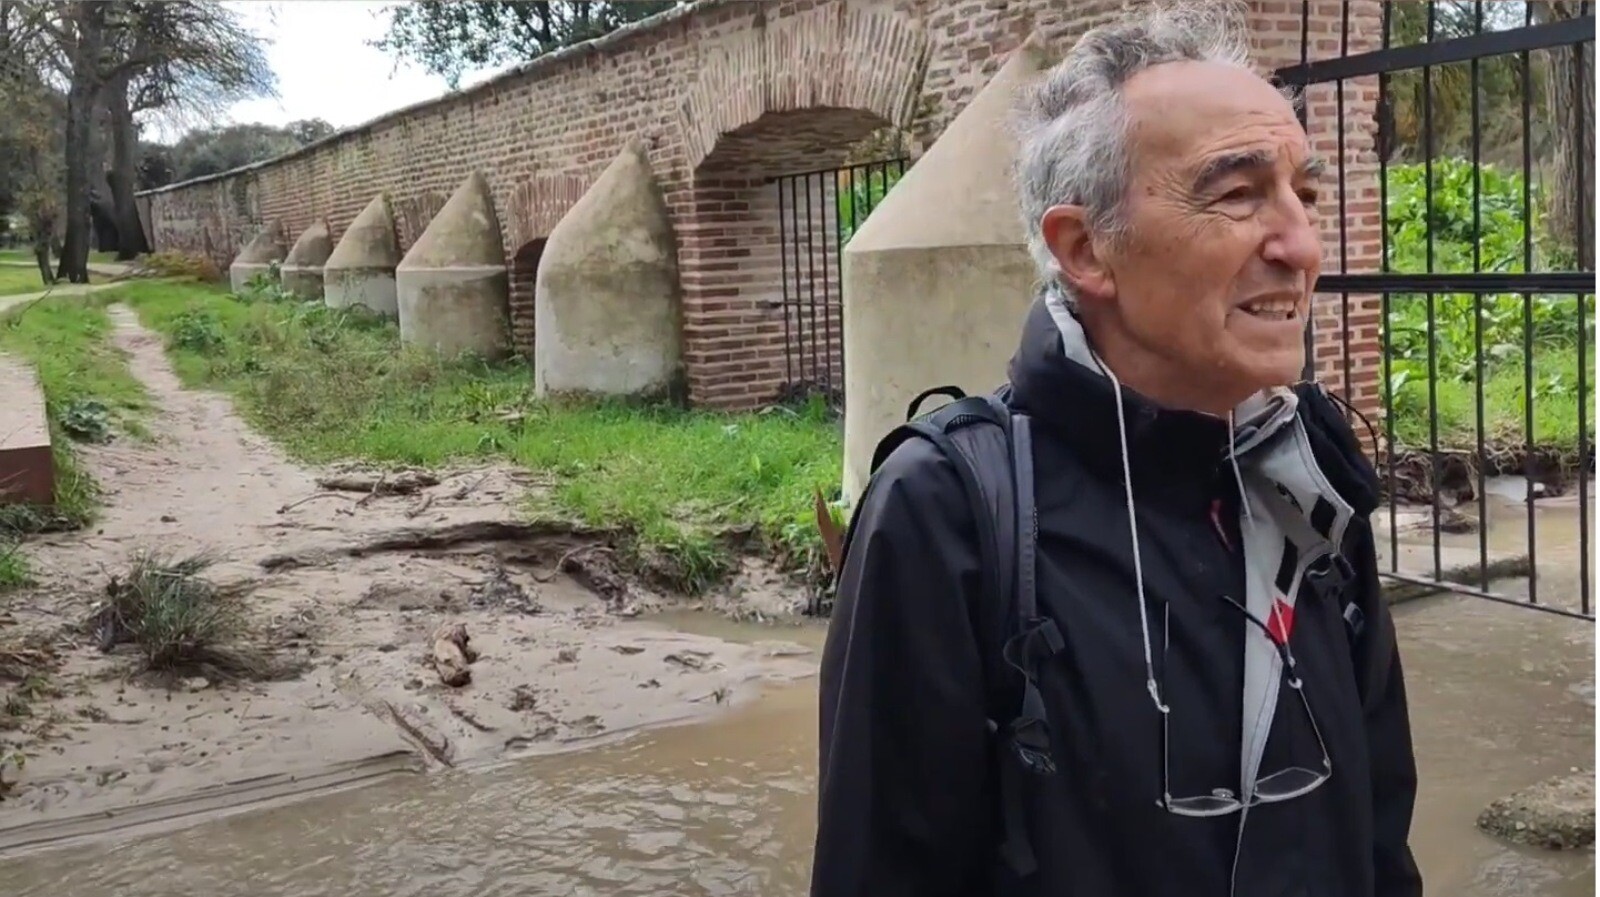 Advierten del posible derrumbe del muro de la Casa de Campo en el Parque Forestal Adolfo Suárez de Pozuelo